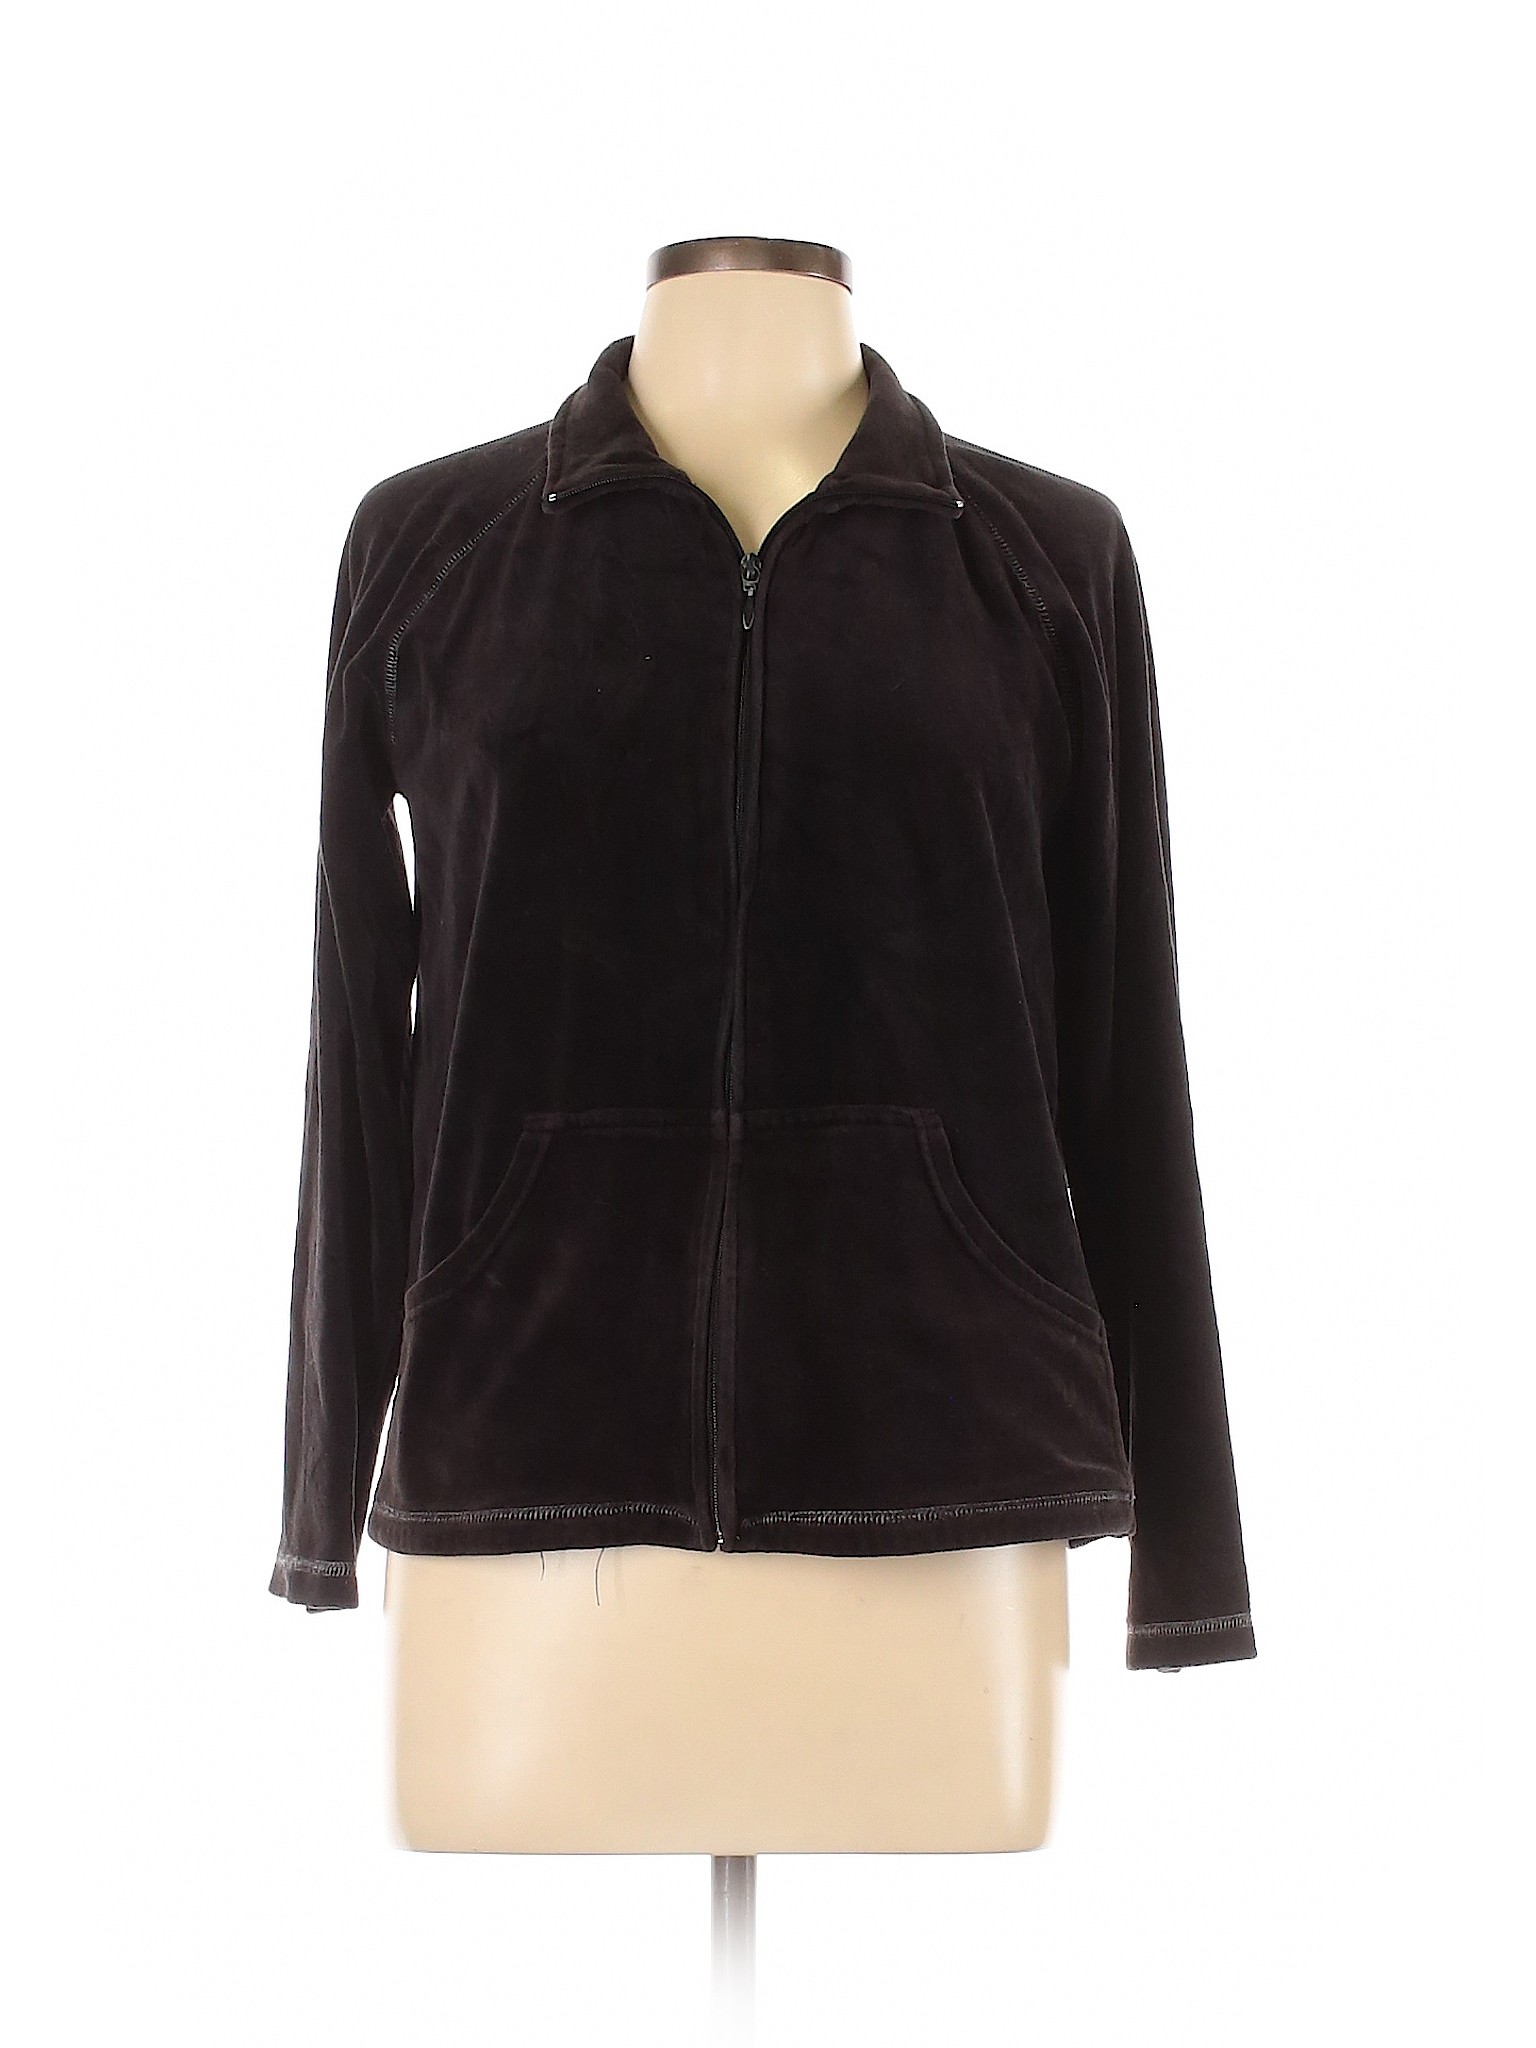 Essentials Women Black Jacket M | eBay